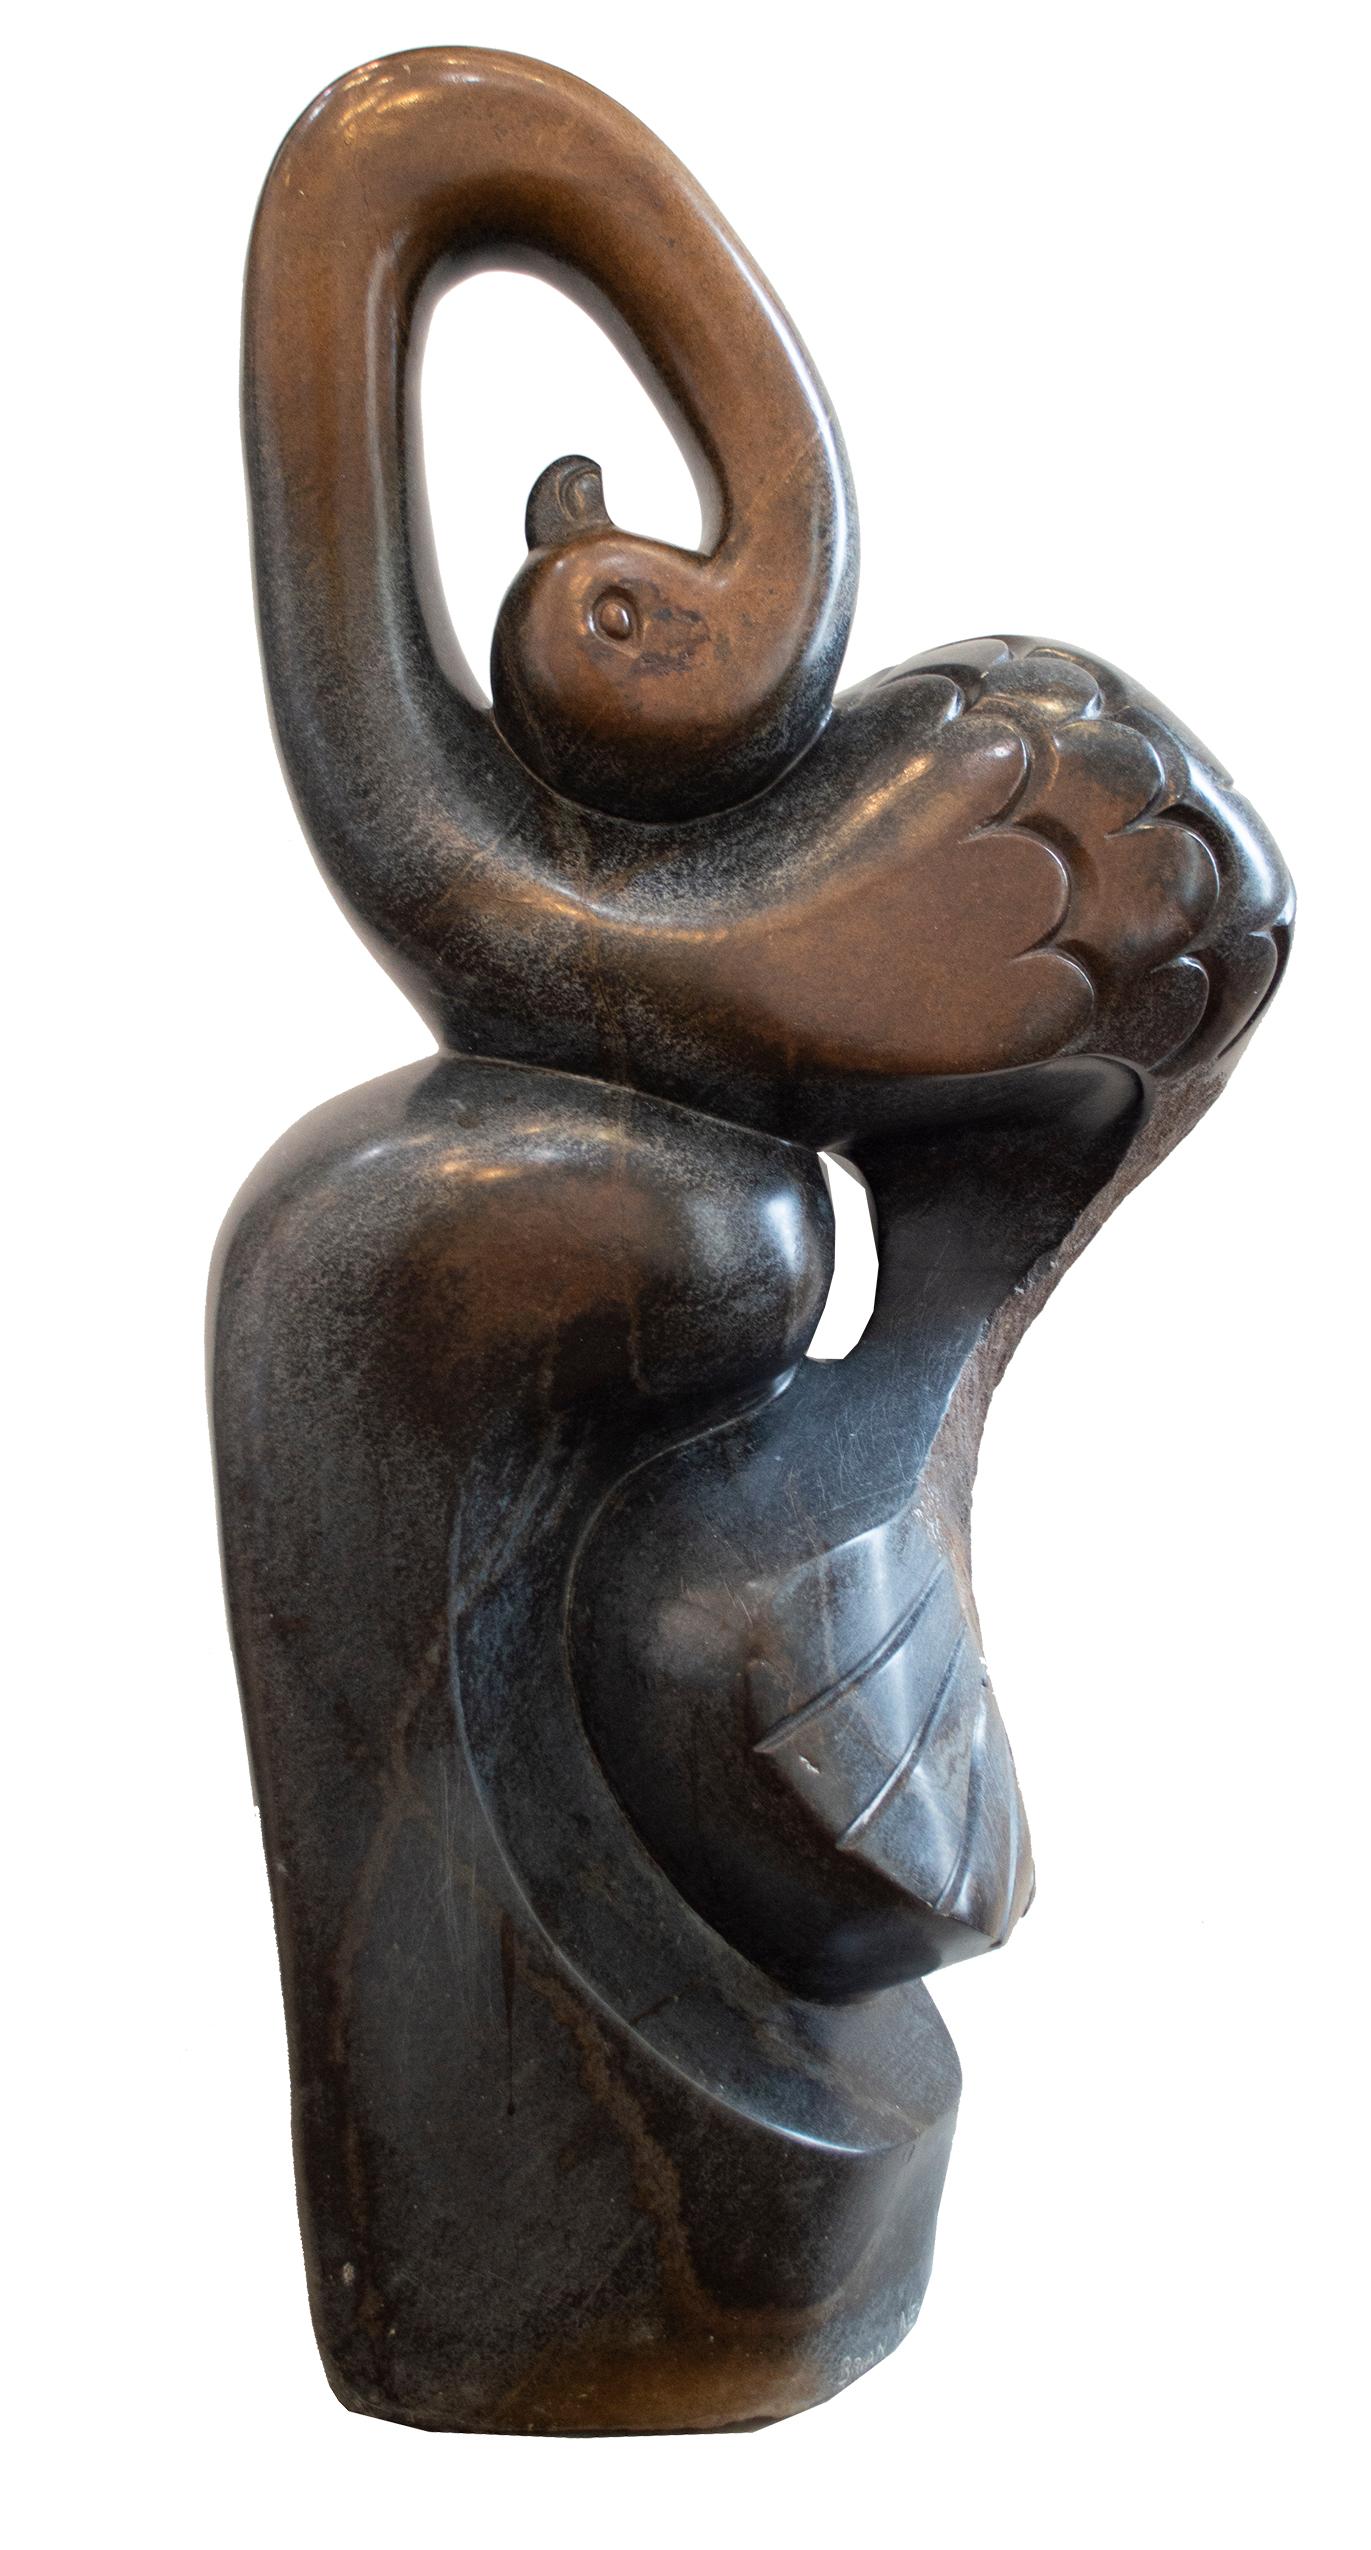 l'autruche est une sculpture originale en pierre à ressort signée par l'artiste zimbabwéen Brian Nehumba. Brian a été formé dans la tradition de la sculpture sur pierre de Shona et cette œuvre est un excellent exemple de son travail, combinant des